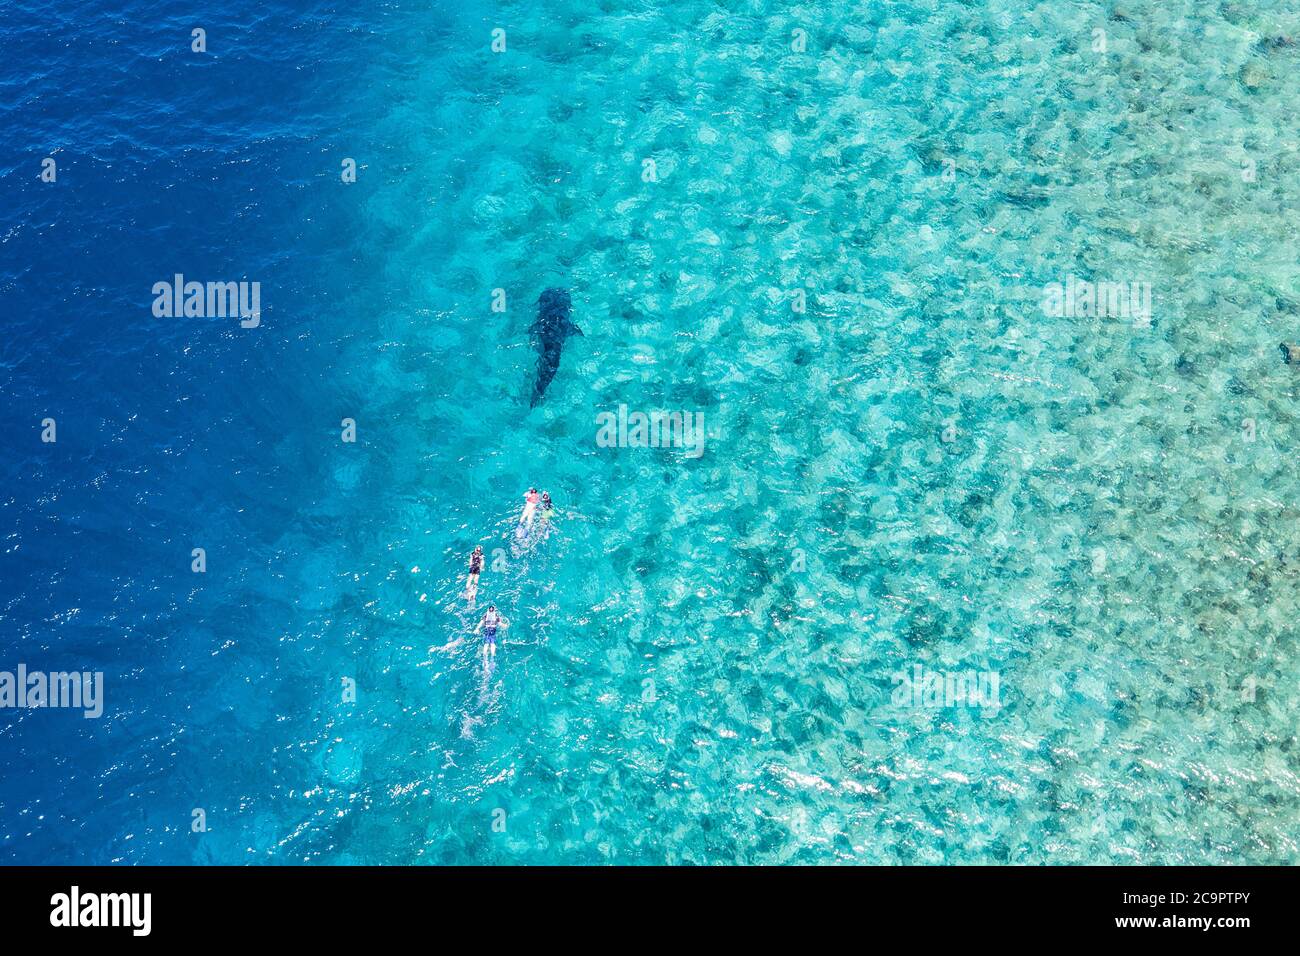 Menschen schnorcheln mit einem Walhai. Fantastische Luftaufnahme, Indischer Ozean Lagune Korallenriff, Malediven Inseln Luxus Freizeit Wassersport Aktivität Stockfoto